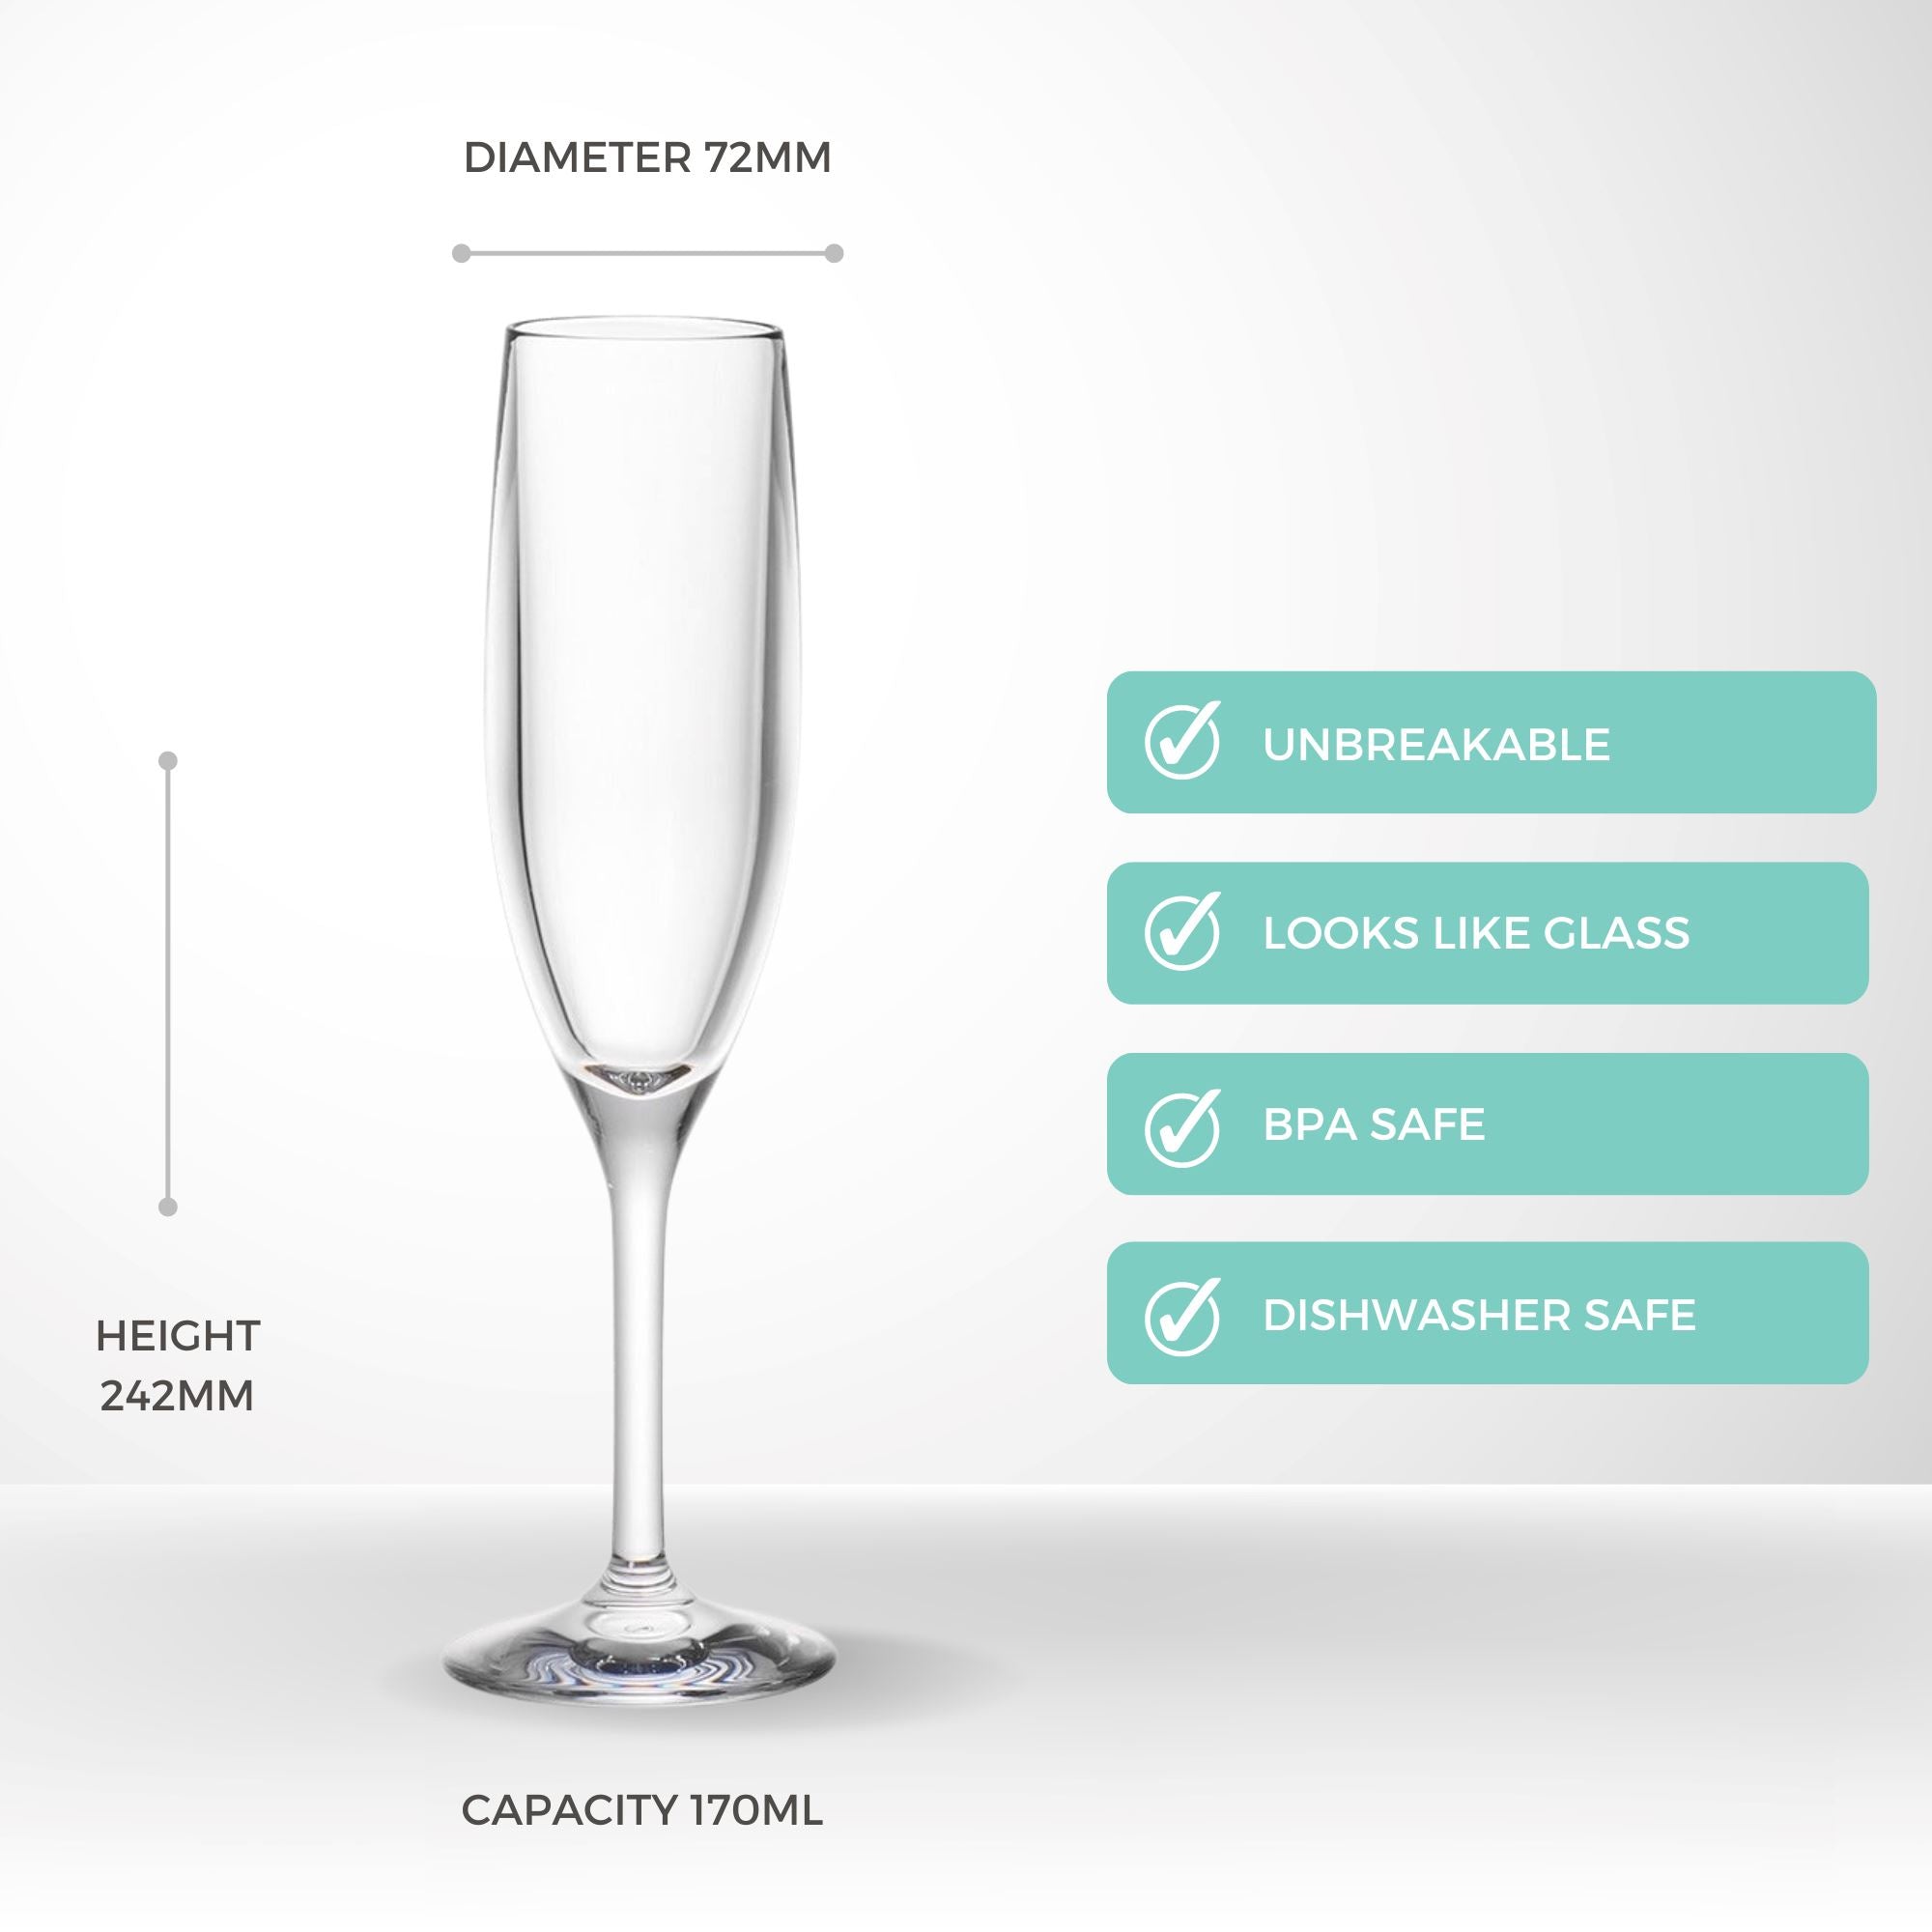 Unbreakable Ava Champagne Glasses 170ml - Set of 4 Stemware D-STILL Drinkware 